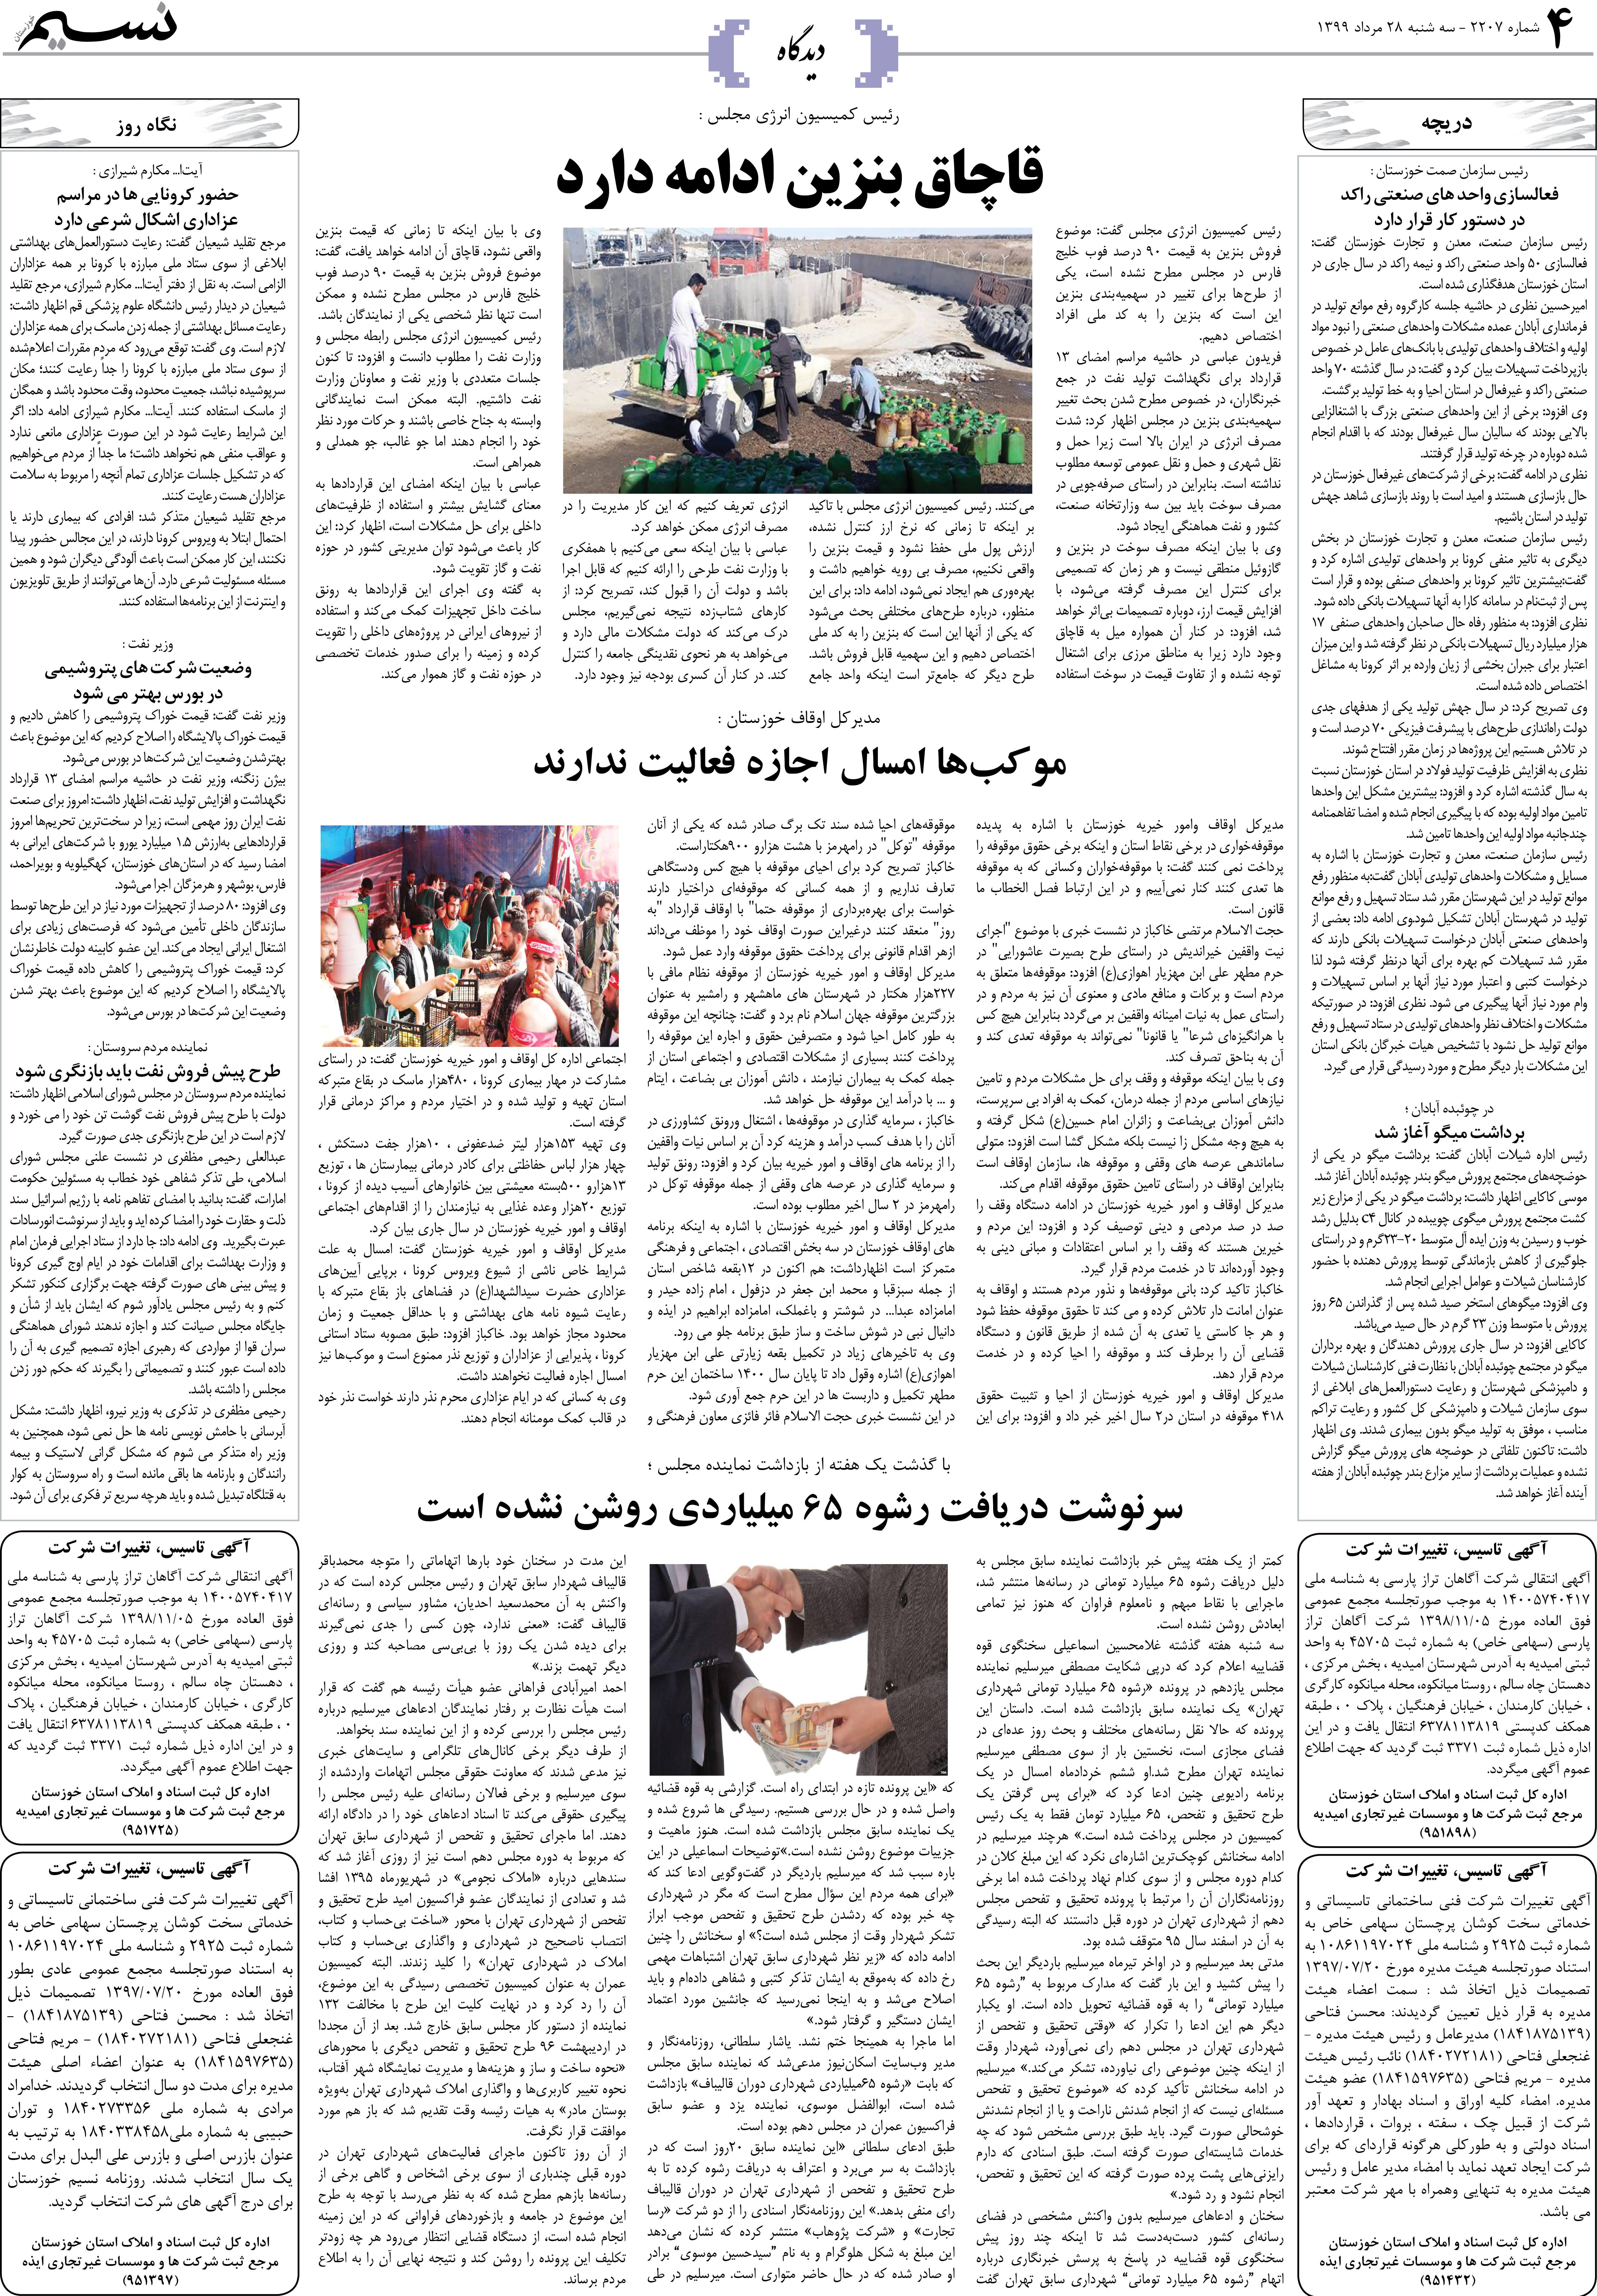 صفحه دیدگاه روزنامه نسیم شماره 2207